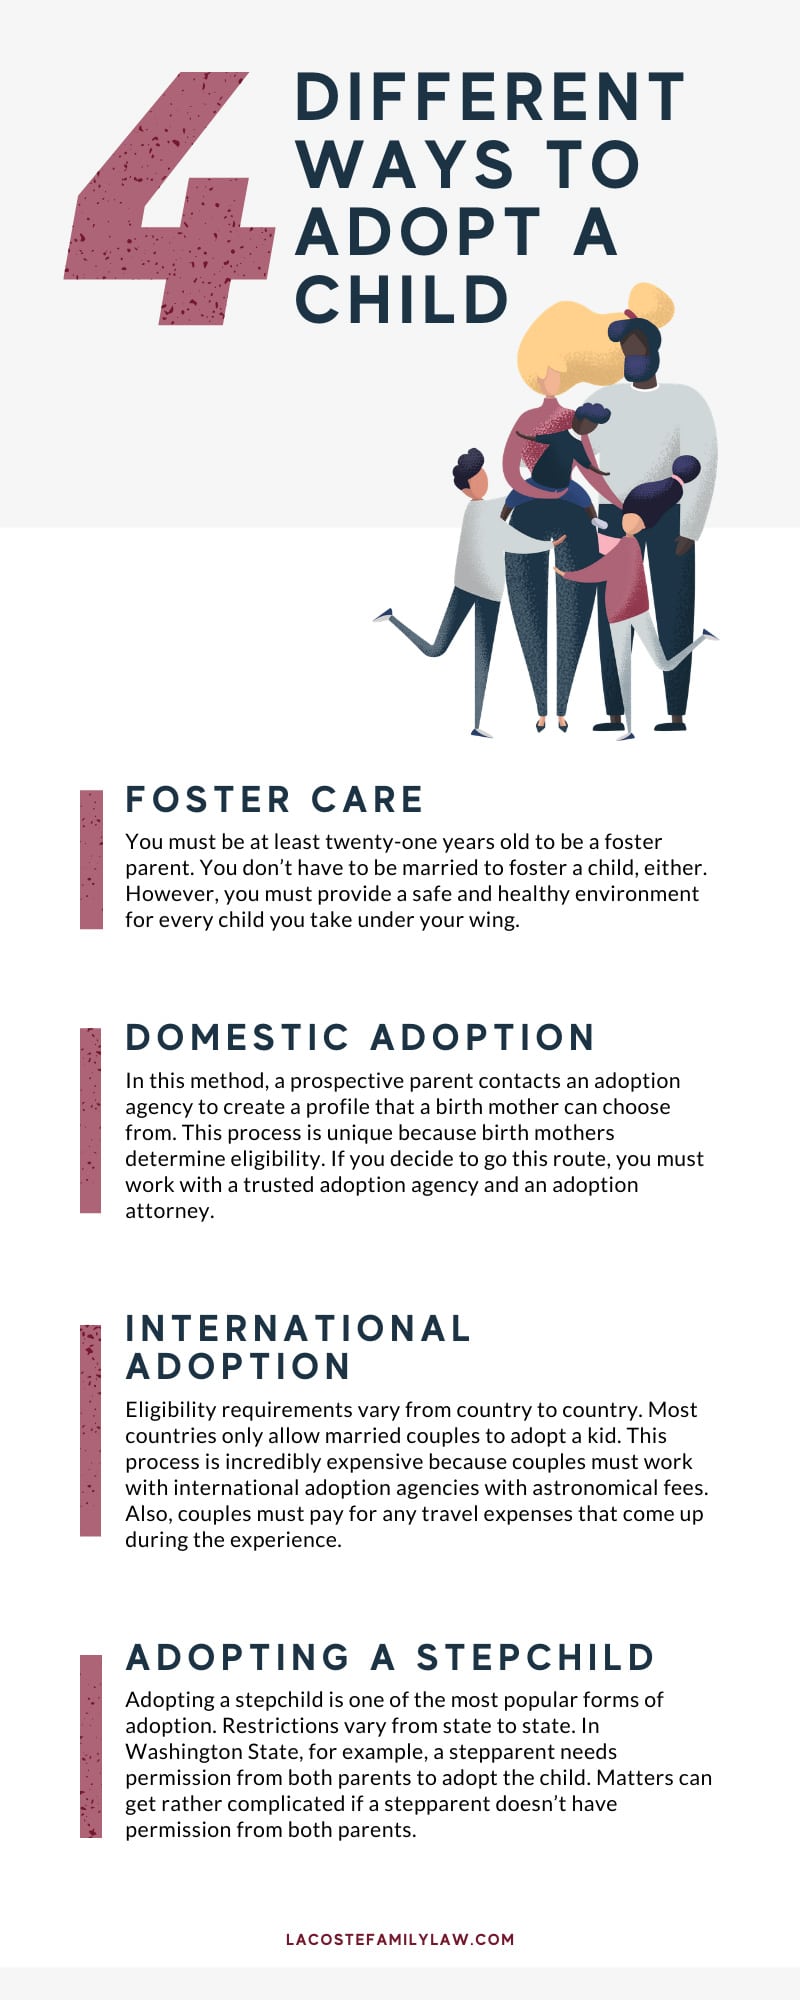 Ways to Adopt a Child